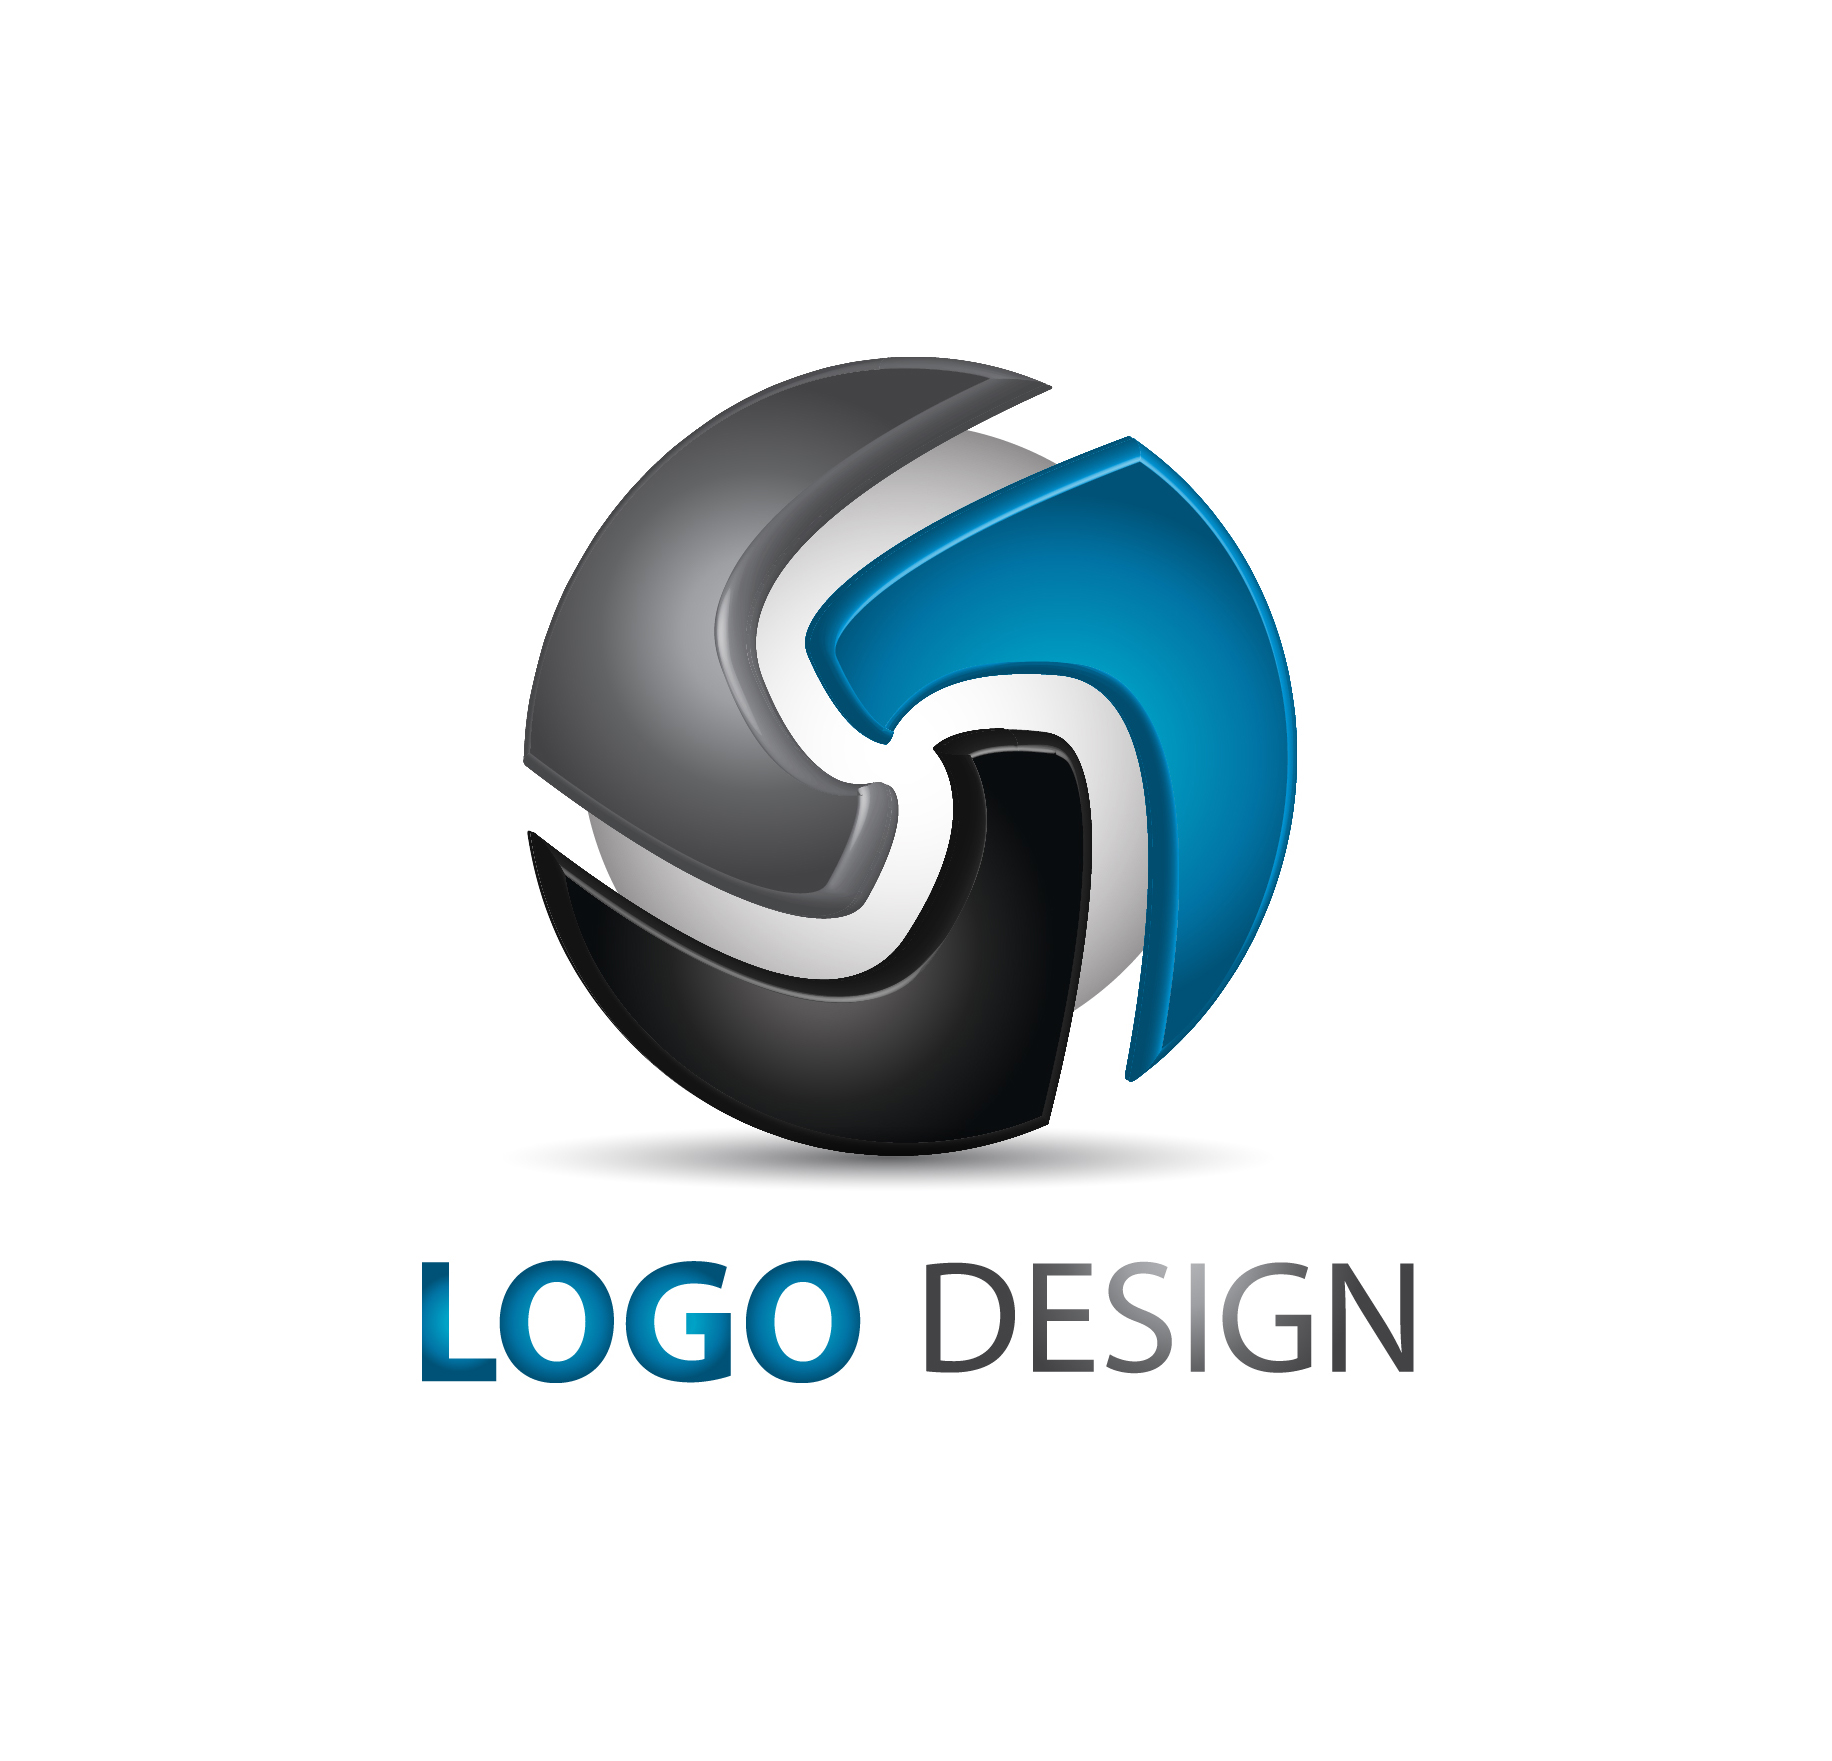 logo 3d illustrator download